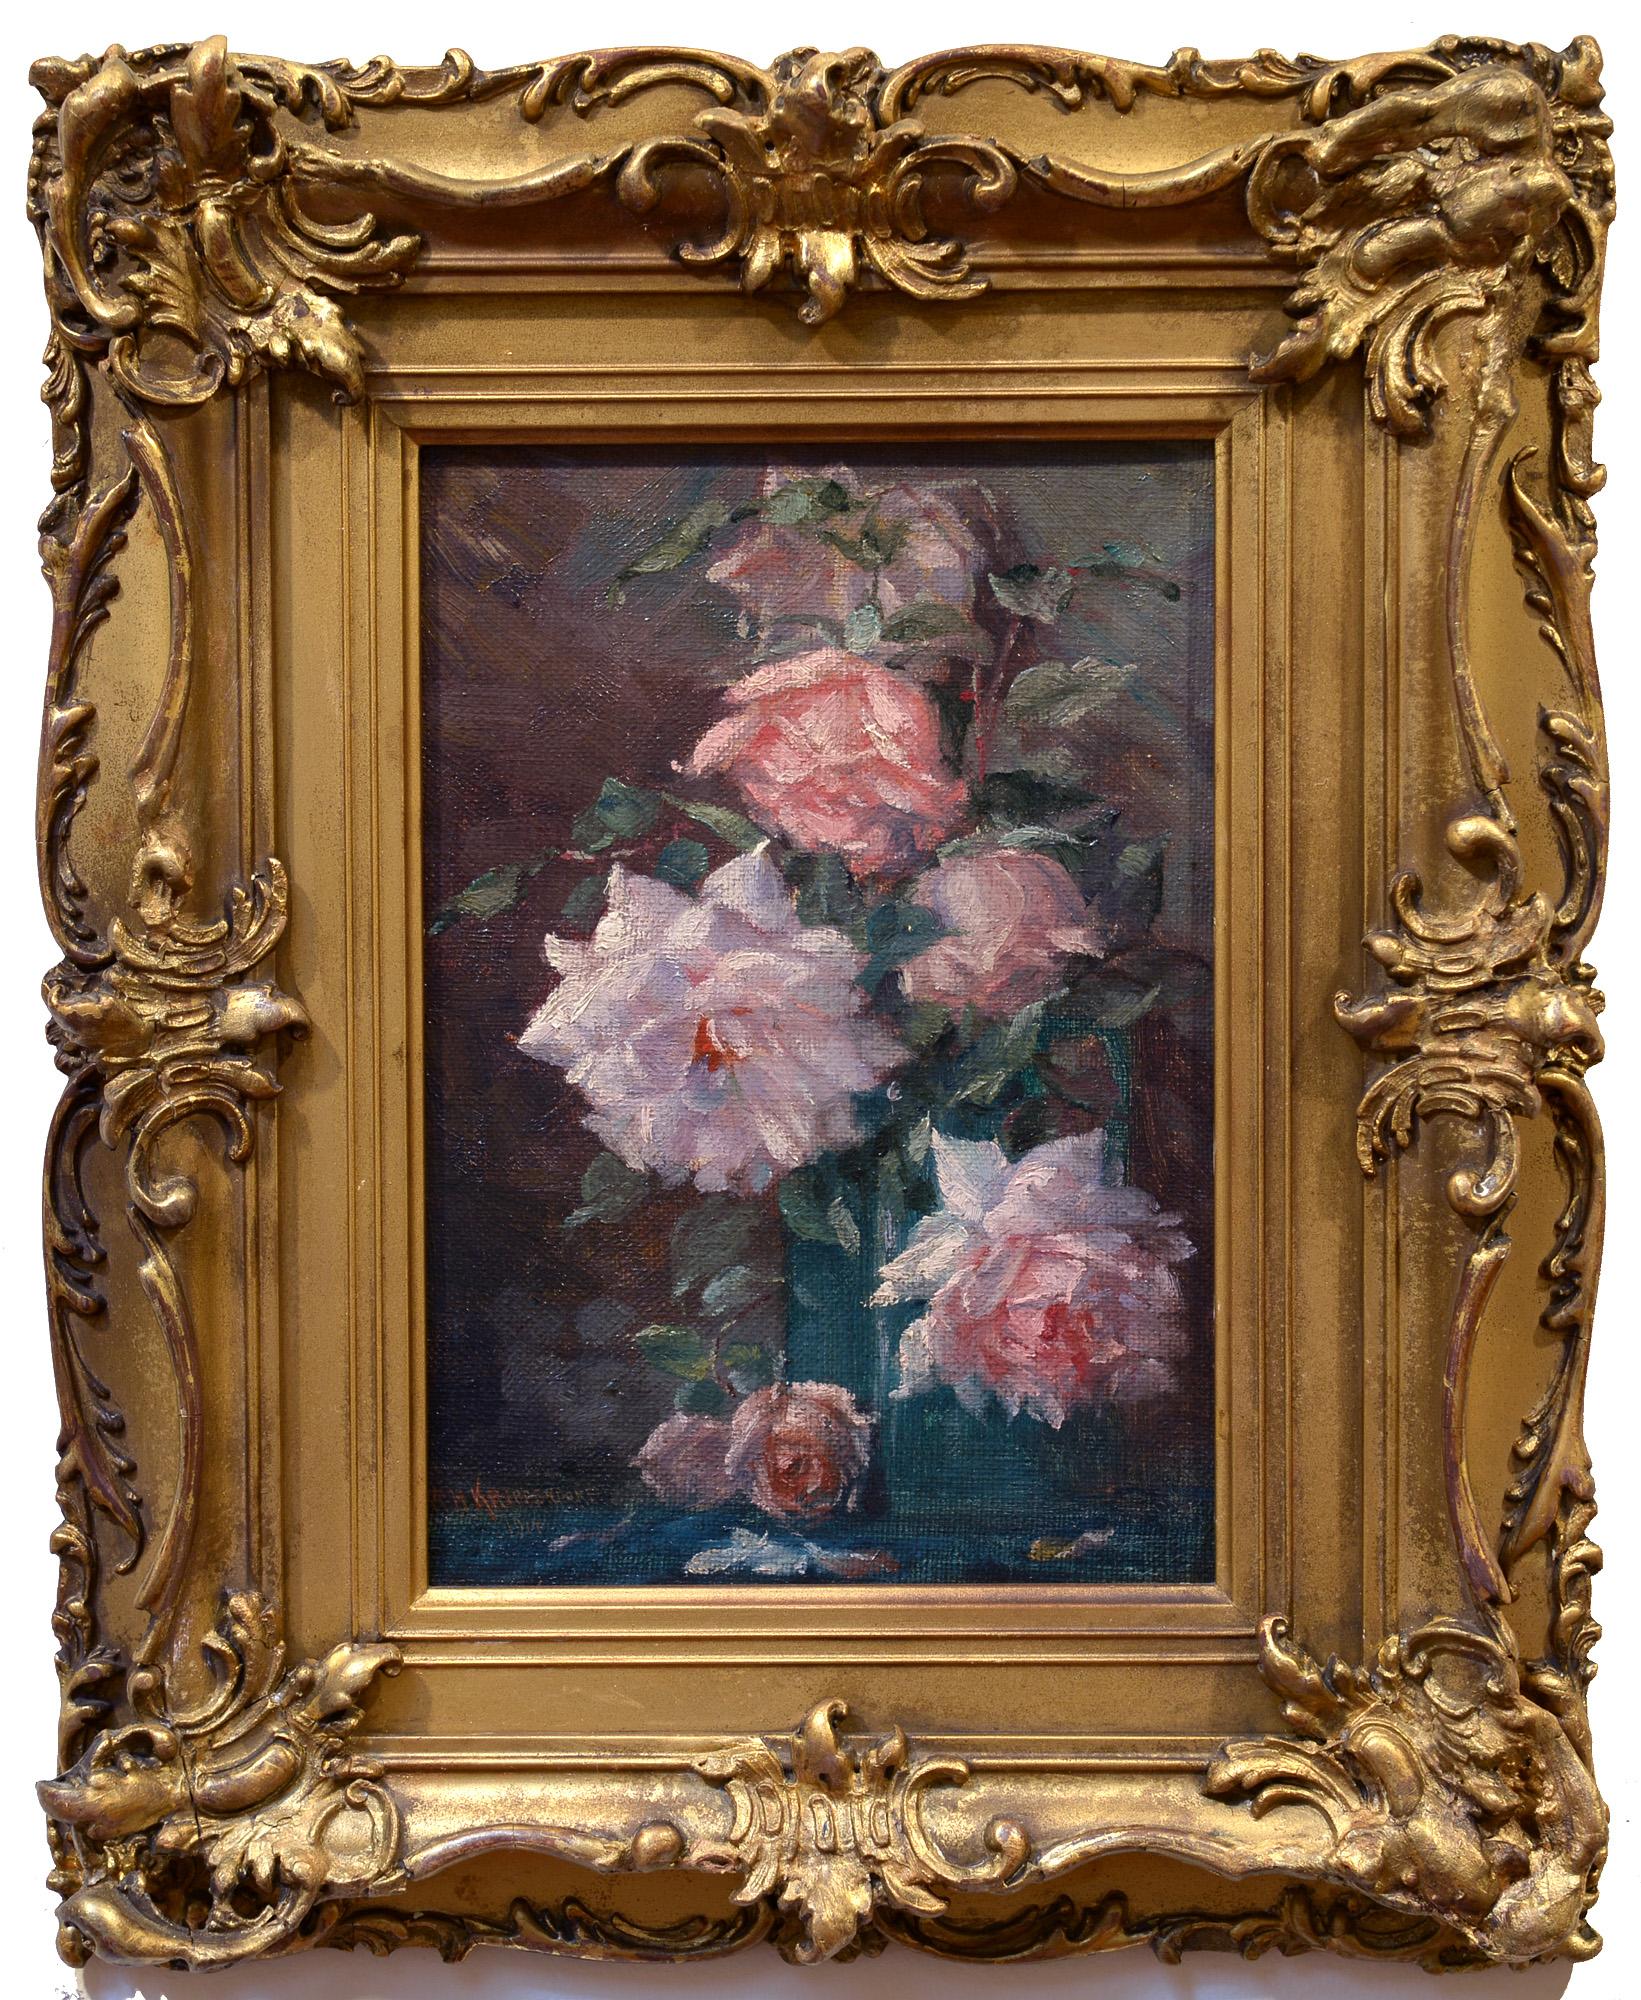 Stillleben mit Rosen, impressionistisches Ölgemälde mit Blumen in einer blauen Vase – Painting von William H. Krippendorf